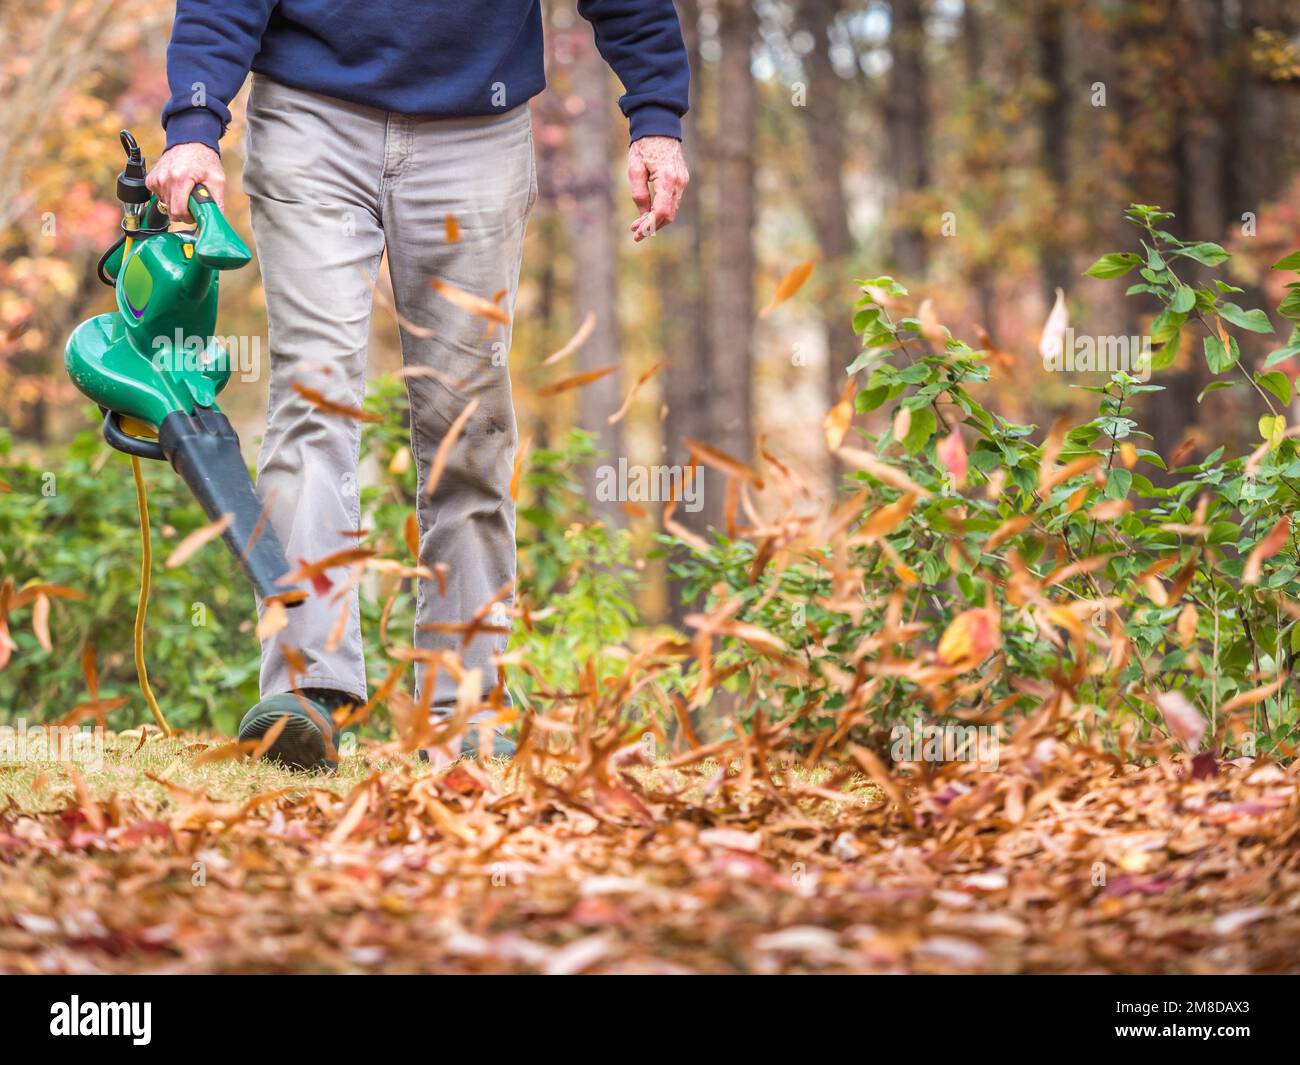 Mann, der ein elektrisch angetriebenes Laubbläser verwendet, um Herbstblätter vom Rasen zu blasen. Landschaftsarbeiter, der Herbstblätter aus dem Wohnhof räumt. Stockfoto